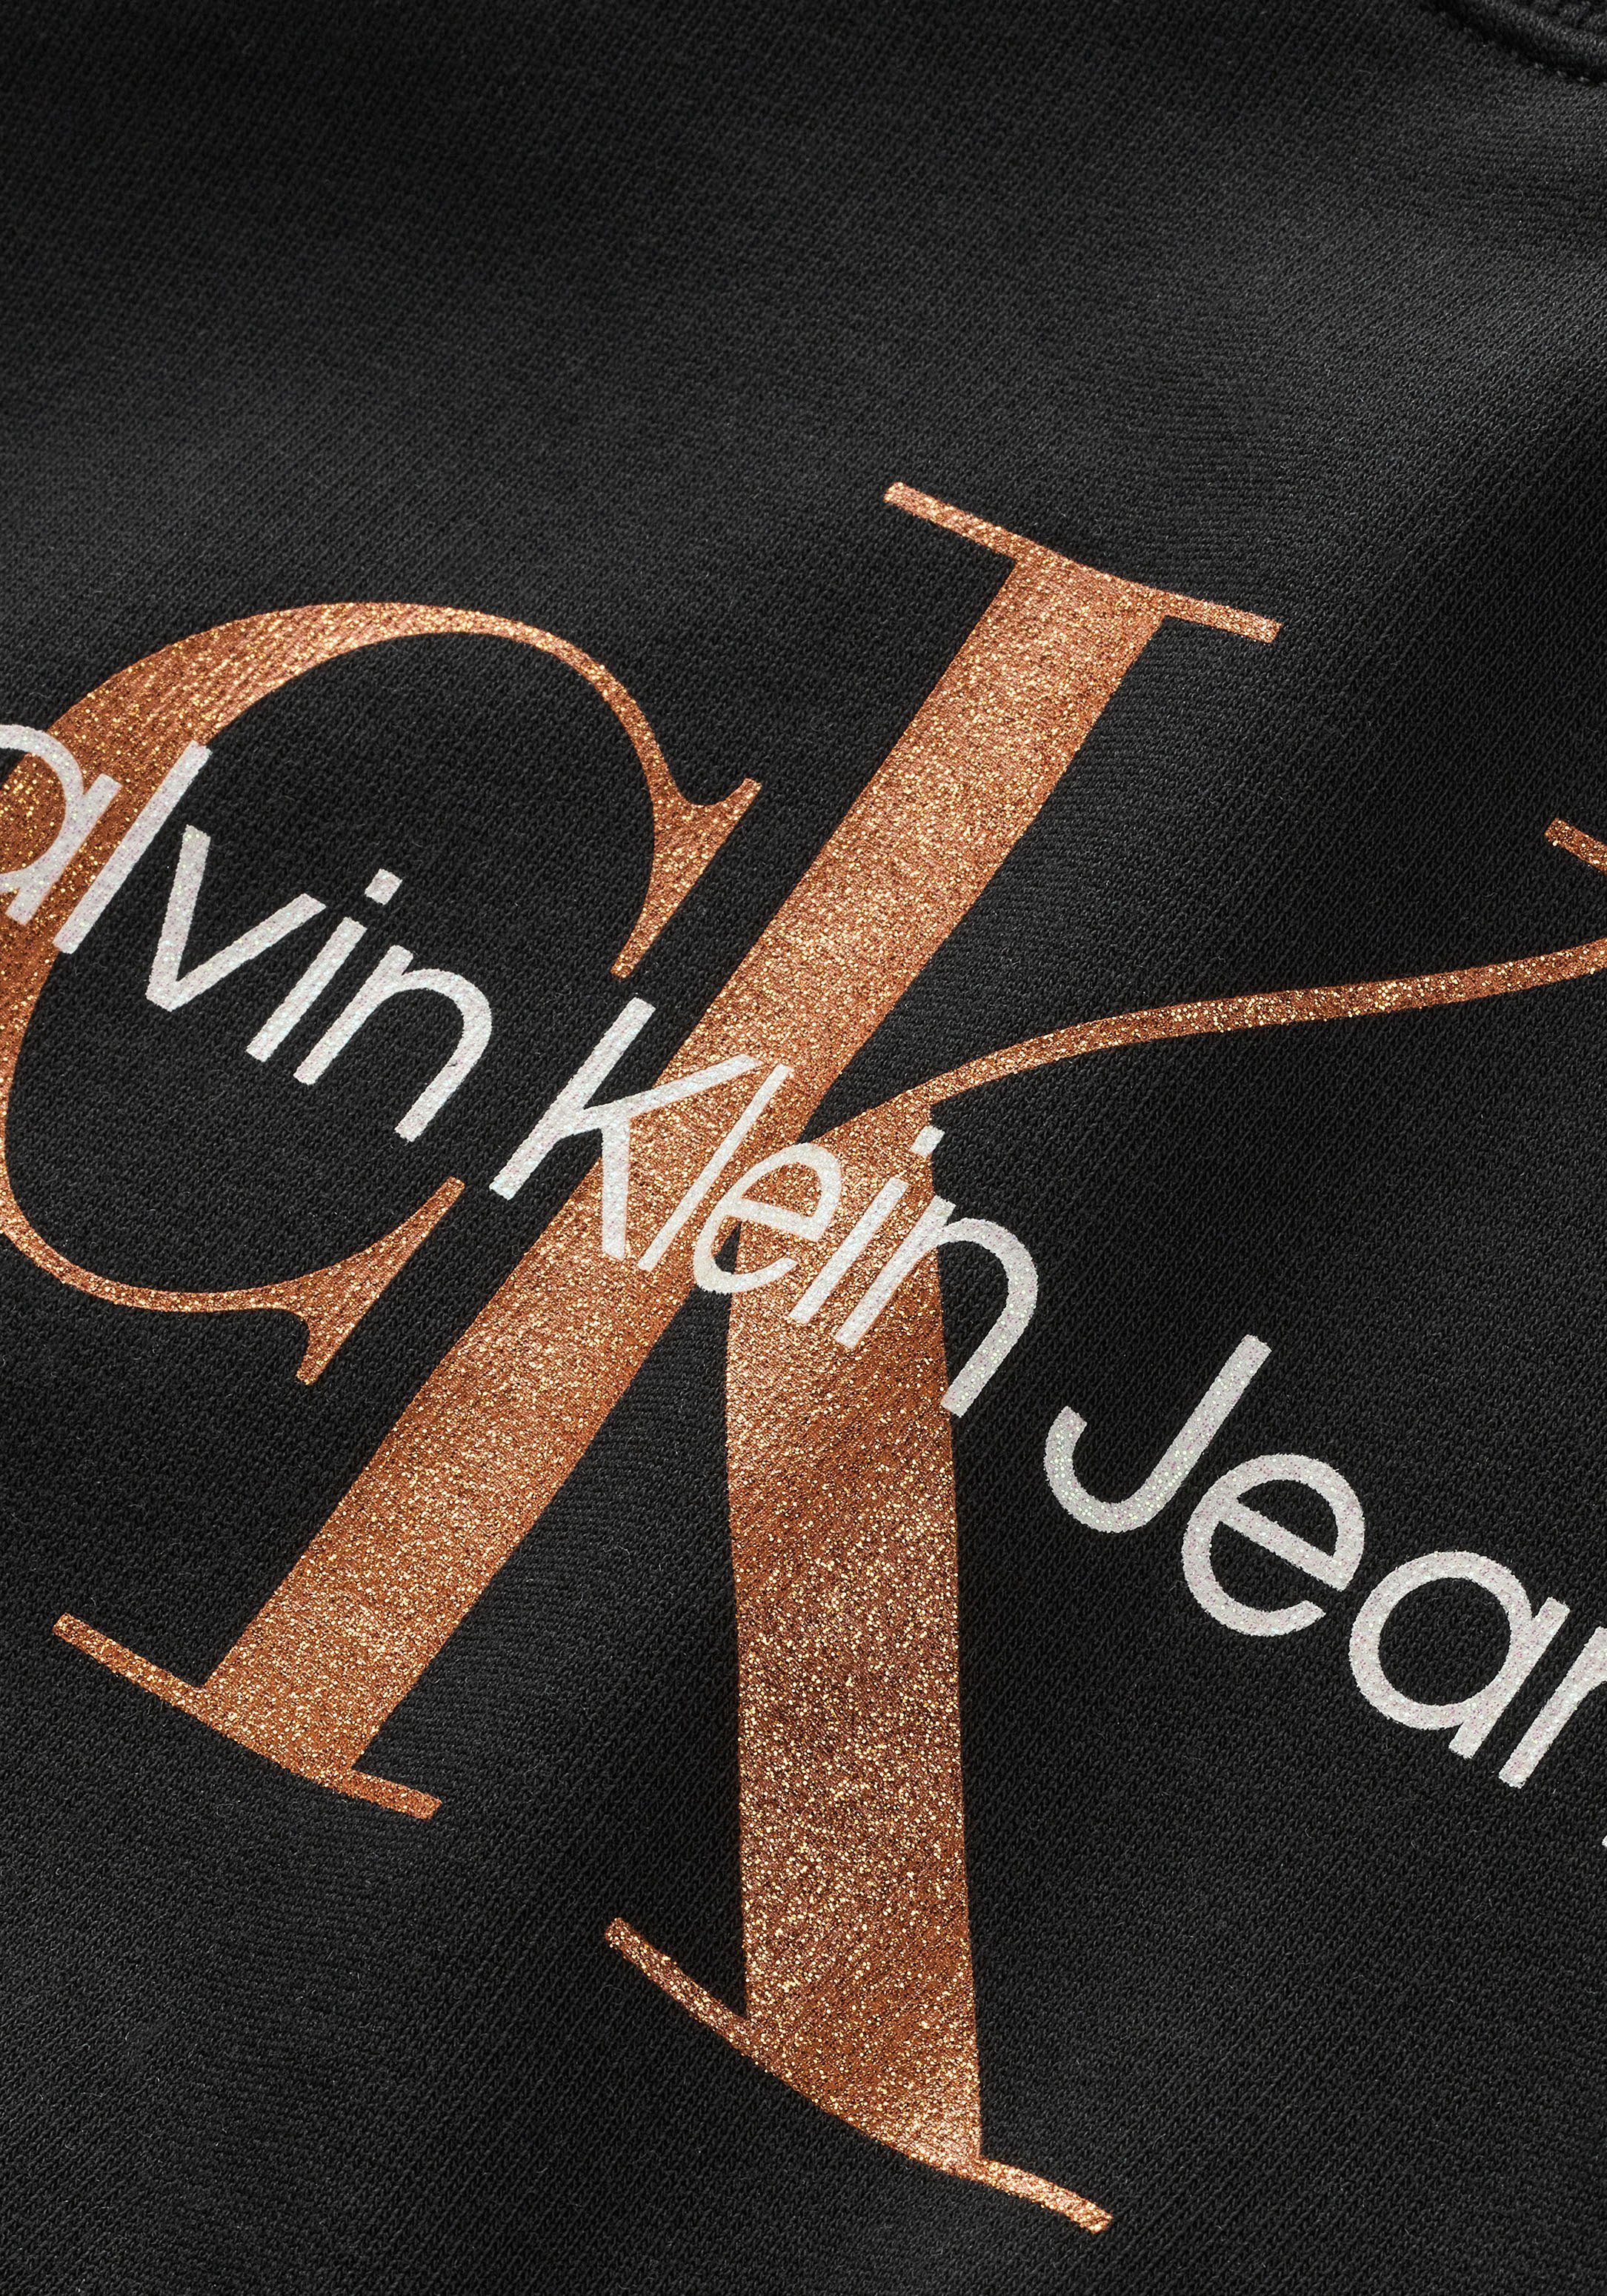 Calvin Klein Jeans Sweatshirt SWEATSHIRT MONOGRAM BRONZE CN